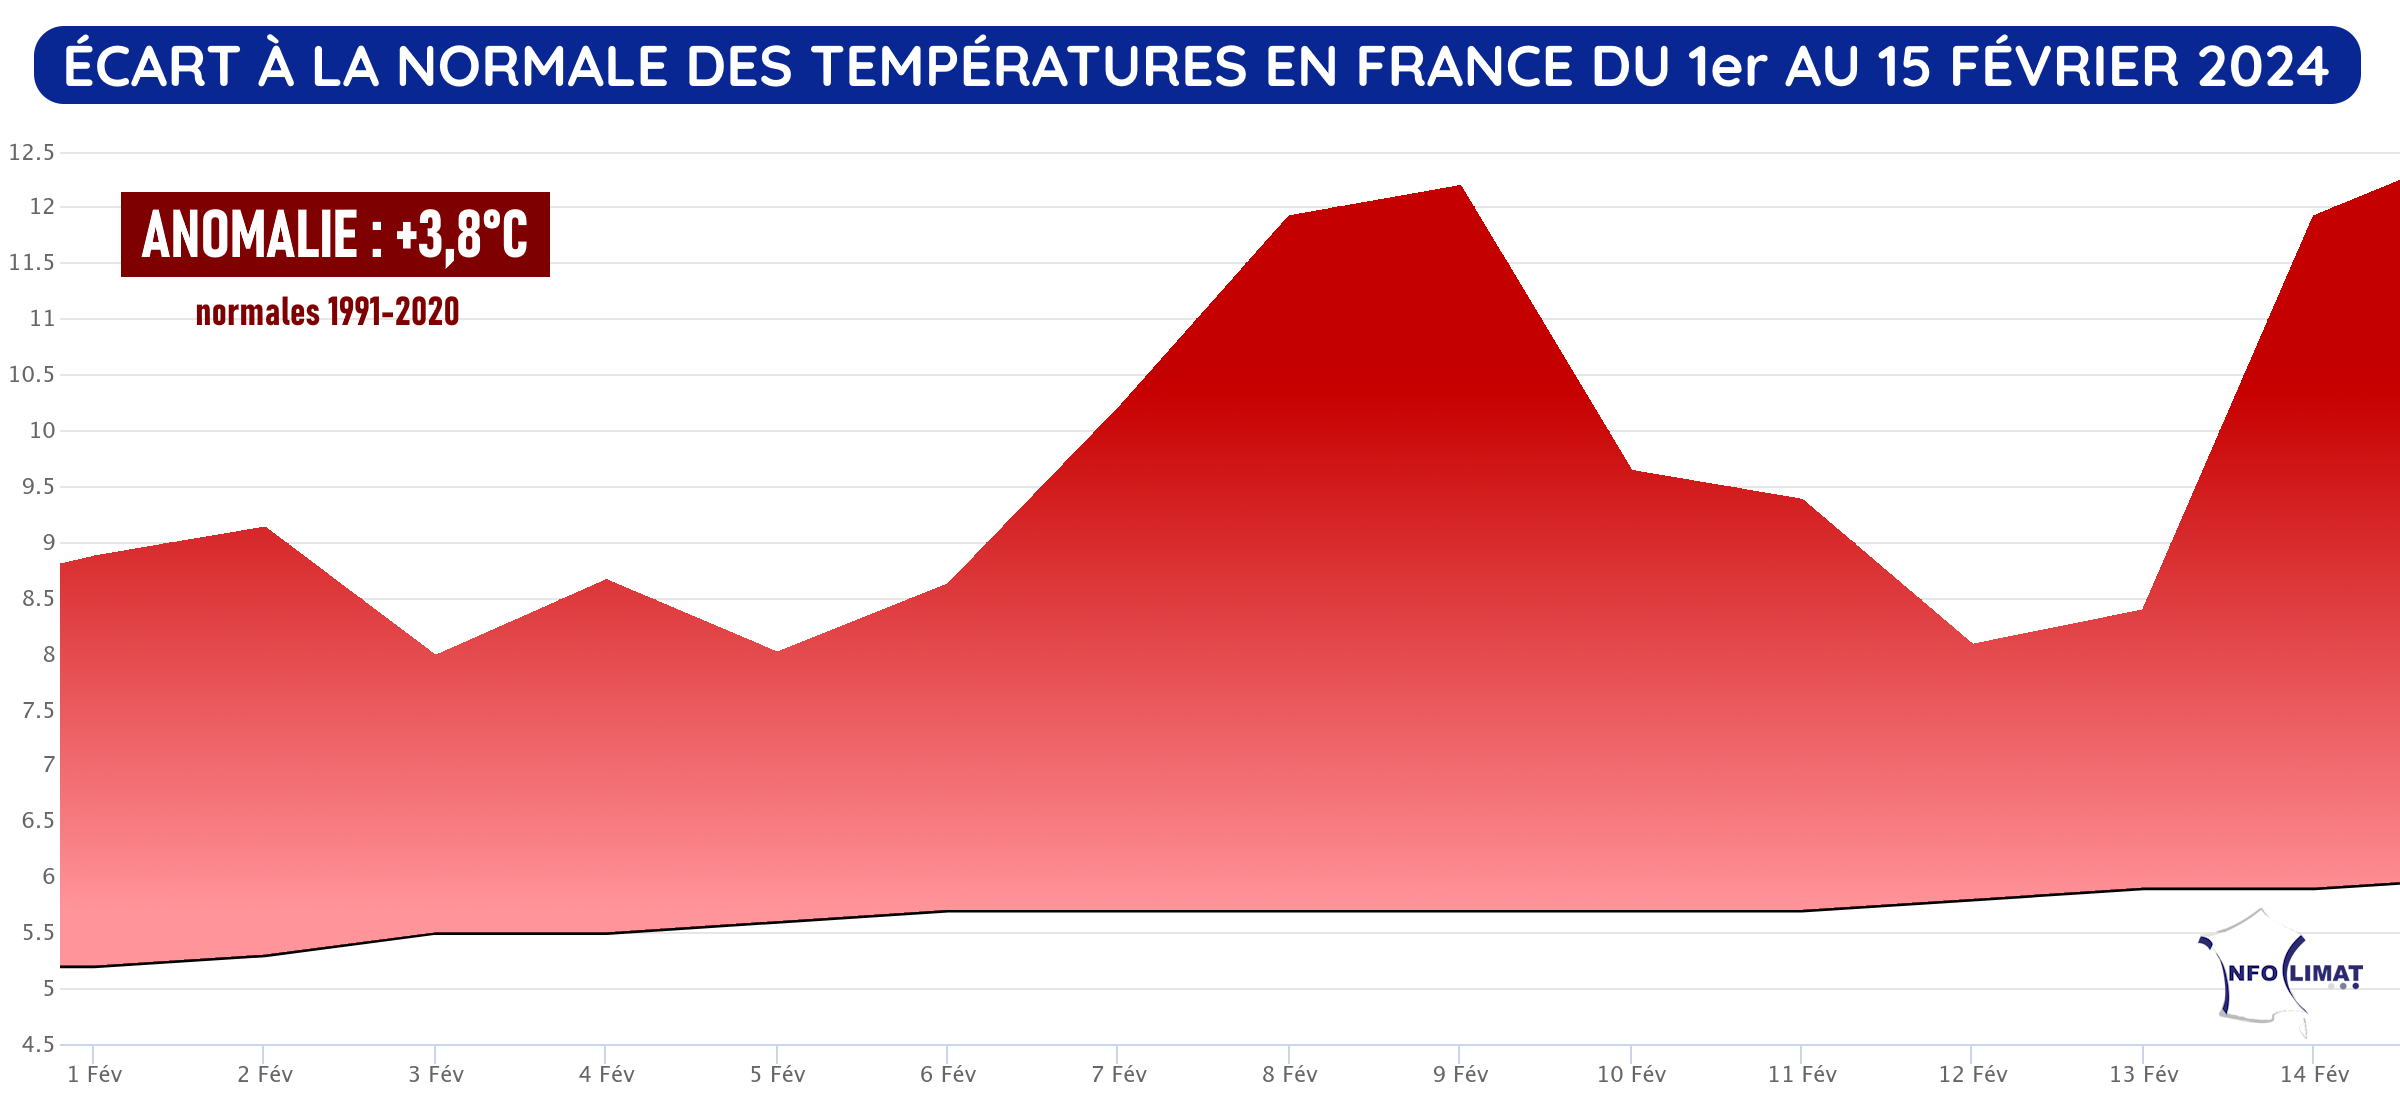 Écart à la normale des températures en France du 1er janvier au 15 février 2024